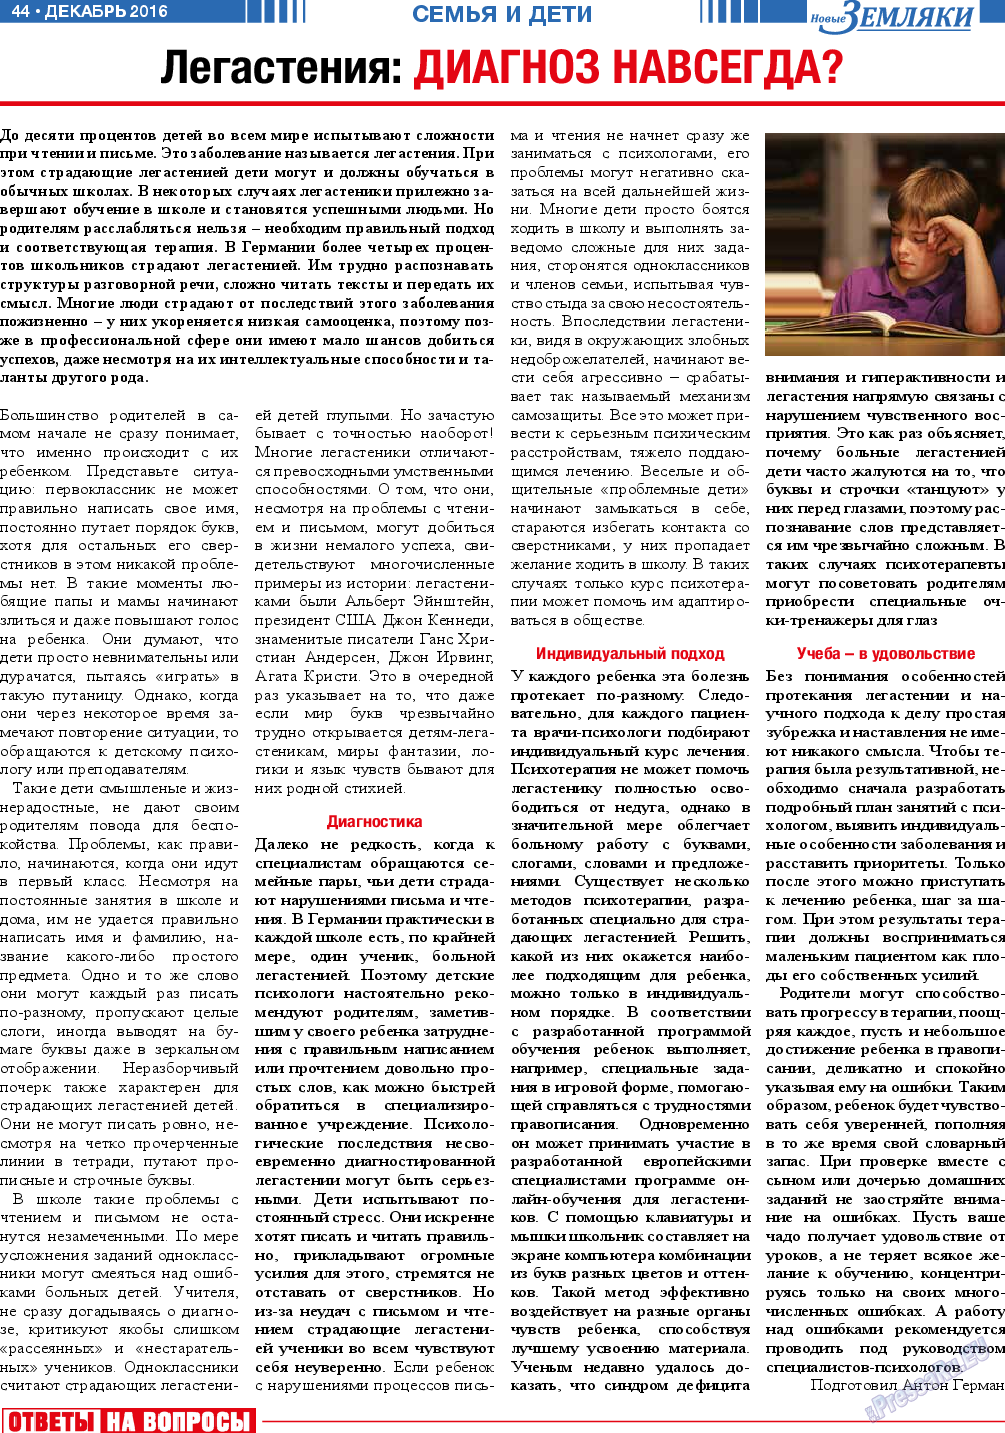 Новые Земляки, газета. 2016 №12 стр.44